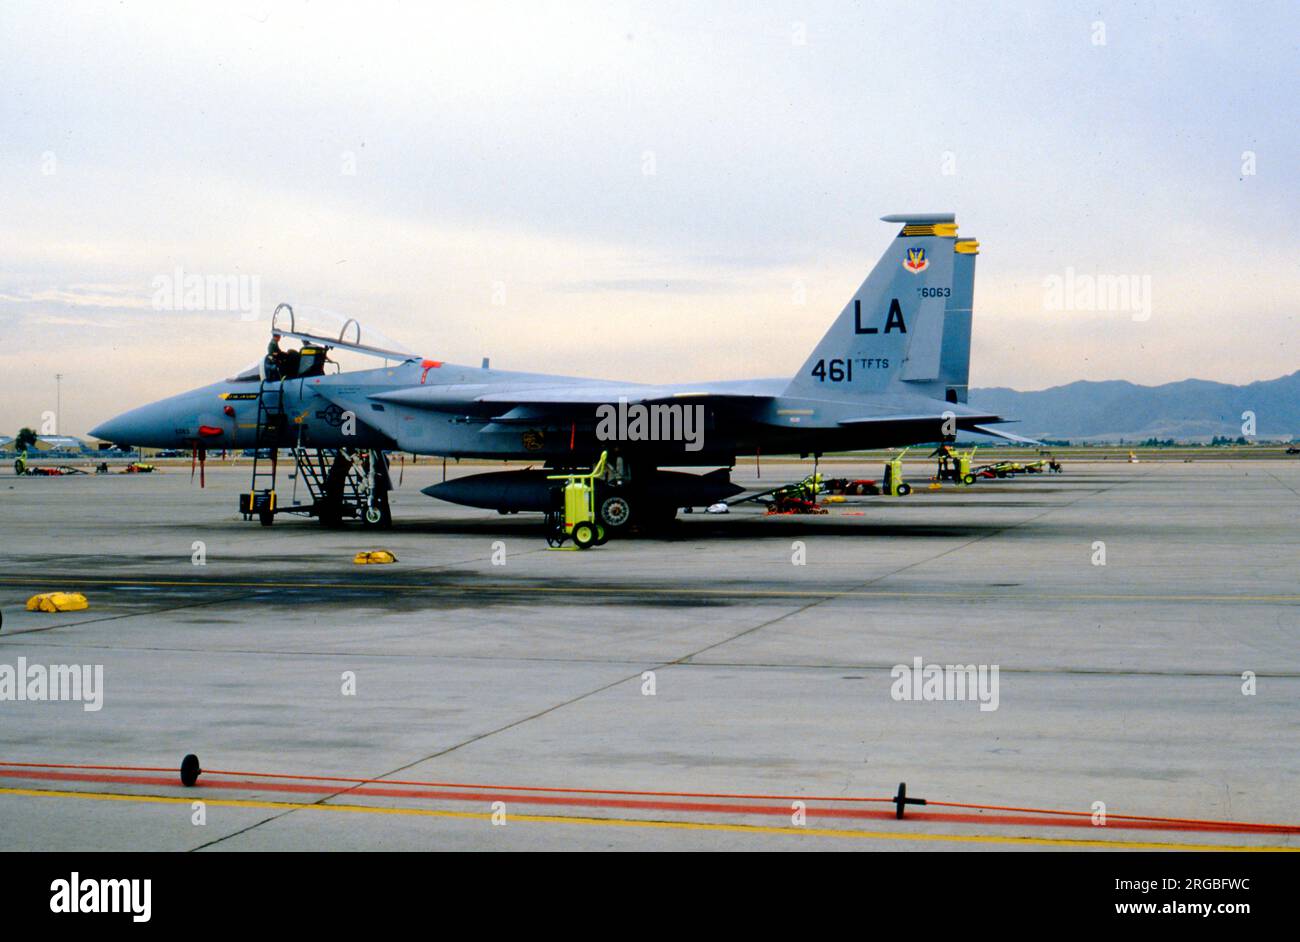 United States Air Force - McDonnell Douglas F-15A-16-MC Eagle 76-063 (msn 0249-A215, codice base 'LA'), del 461st Tactical Fighter Training Squadron, presso la base dell'aeronautica militare Luke. Foto Stock